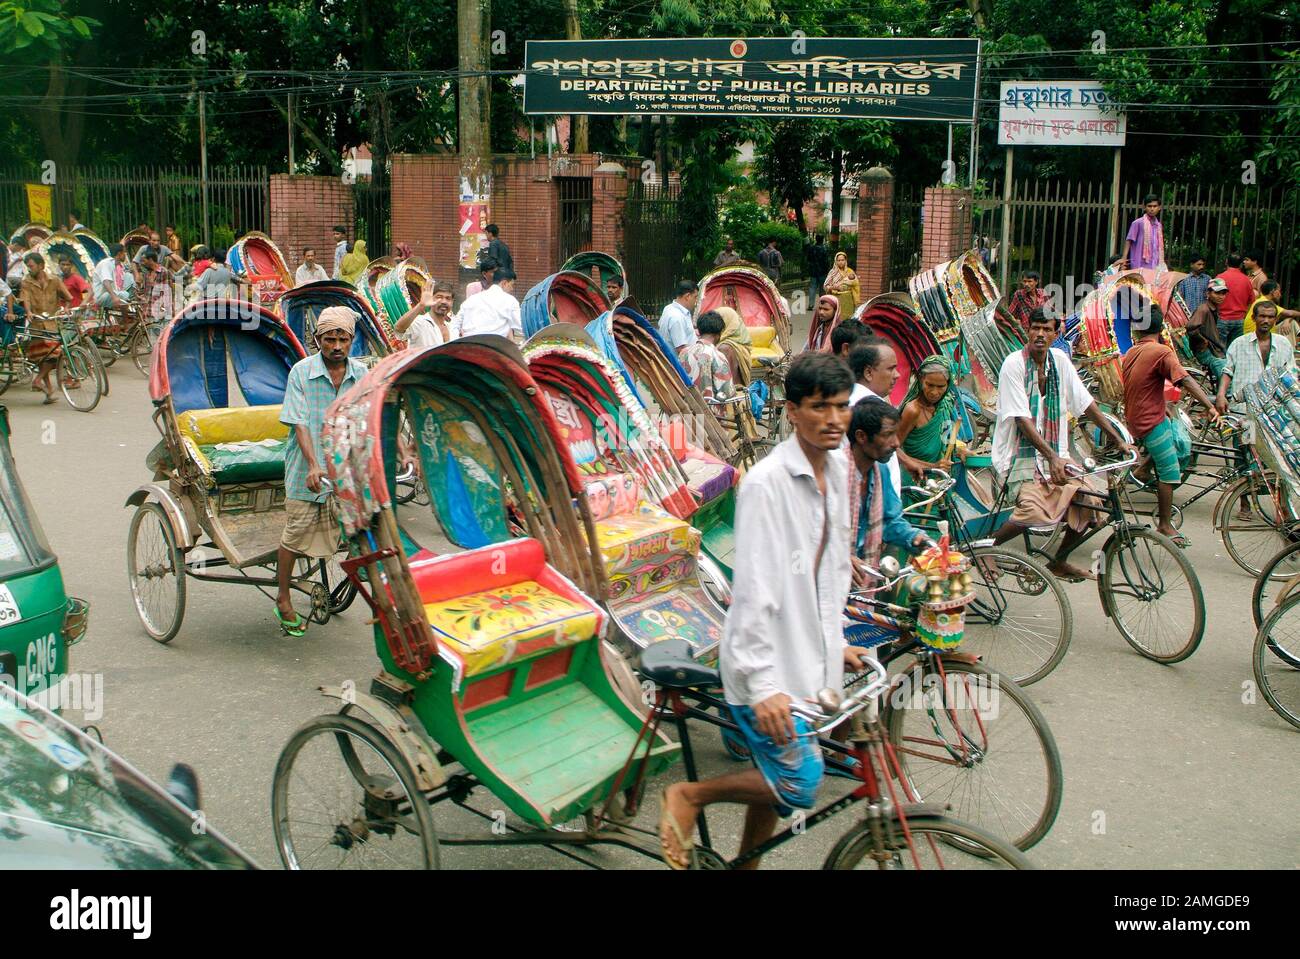 Dhaka, Bangladesch - 17. September 2007: Nicht identifizierte Menschen auf traditionellen Rikschas, billige übliche Verkehrsmittel Stockfoto